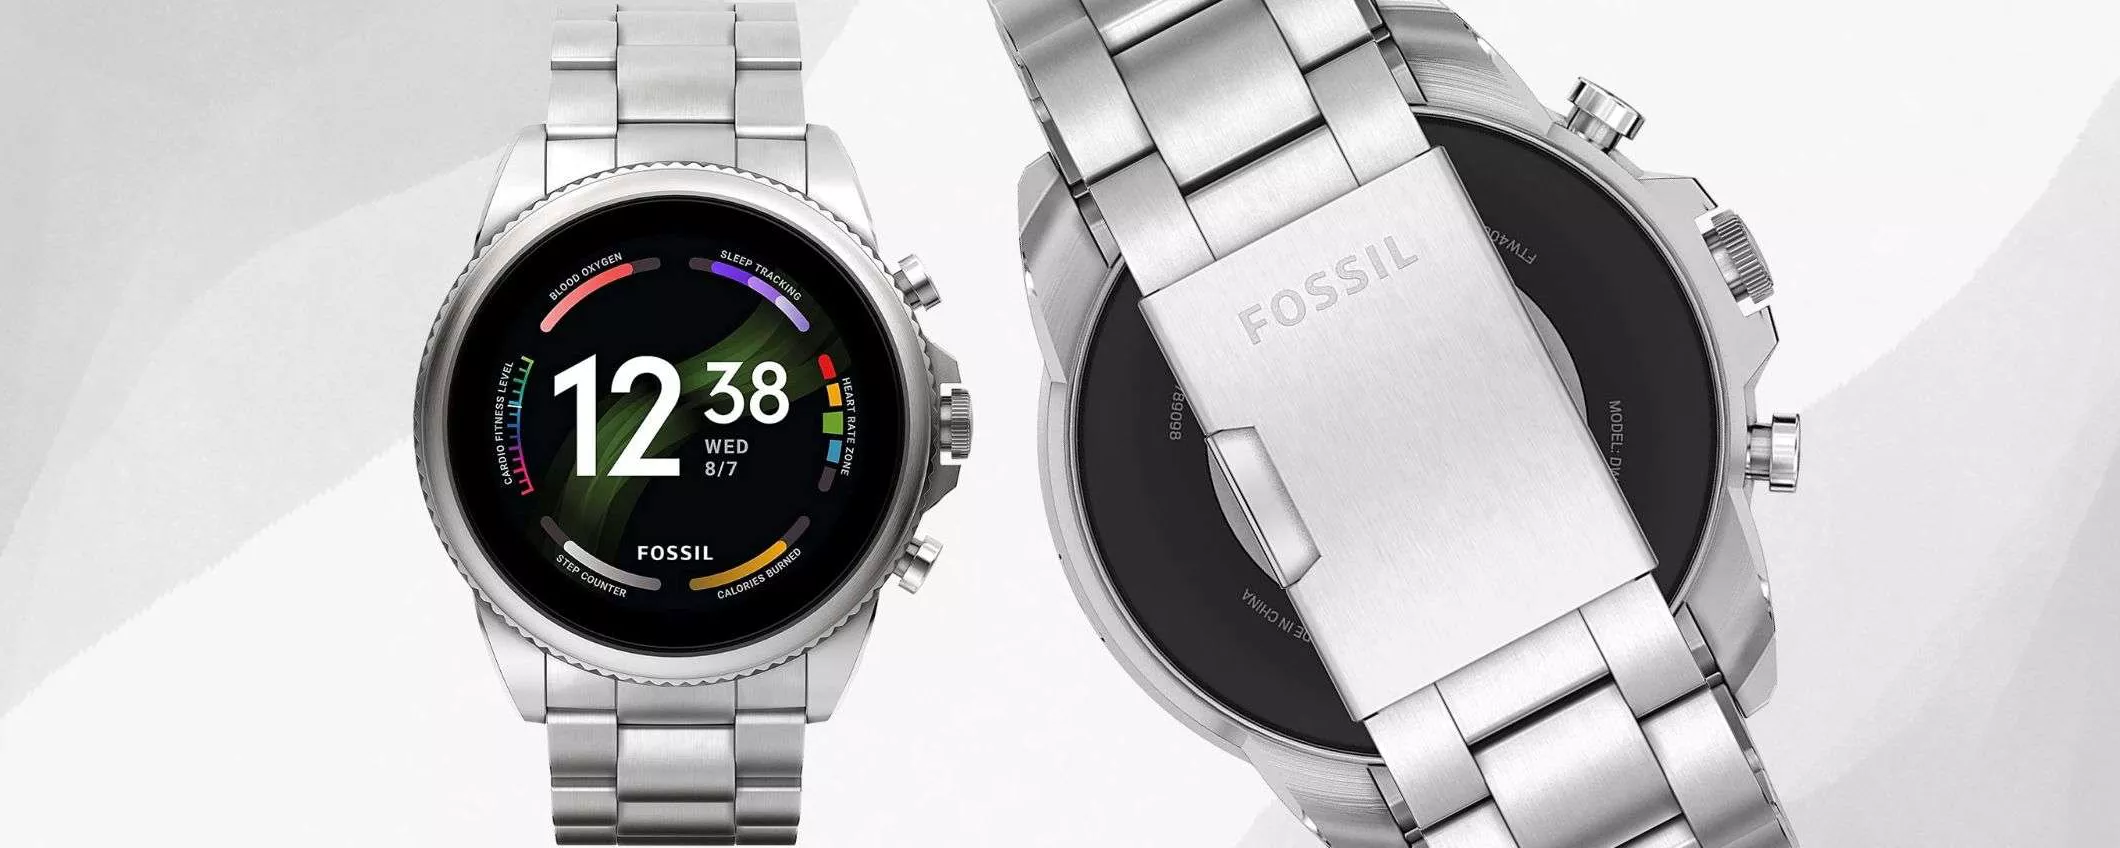 Smartwatch Fossil Gen 6: sconto 60% su Amazon, prezzo SHOCK (131€)